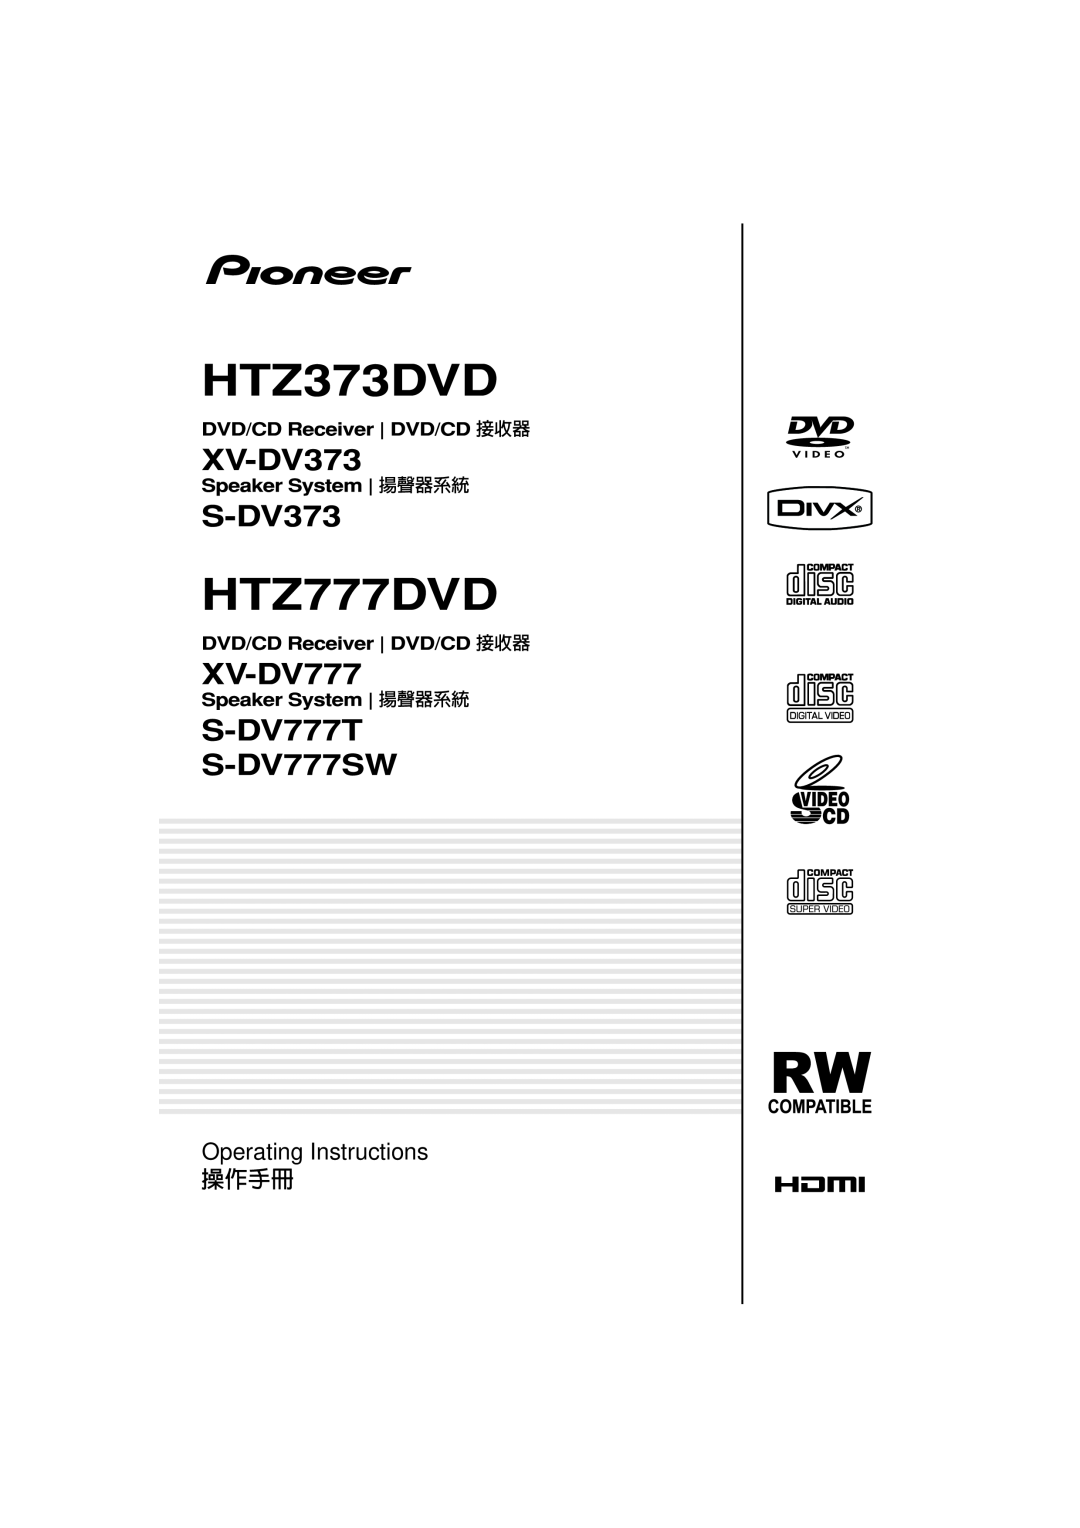 Pioneer XV-DV373, HTZ373DVD, HTZ777DVD, XV-DV777, S-DV777T, S-DV777SW operating instructions Operating Instructions 